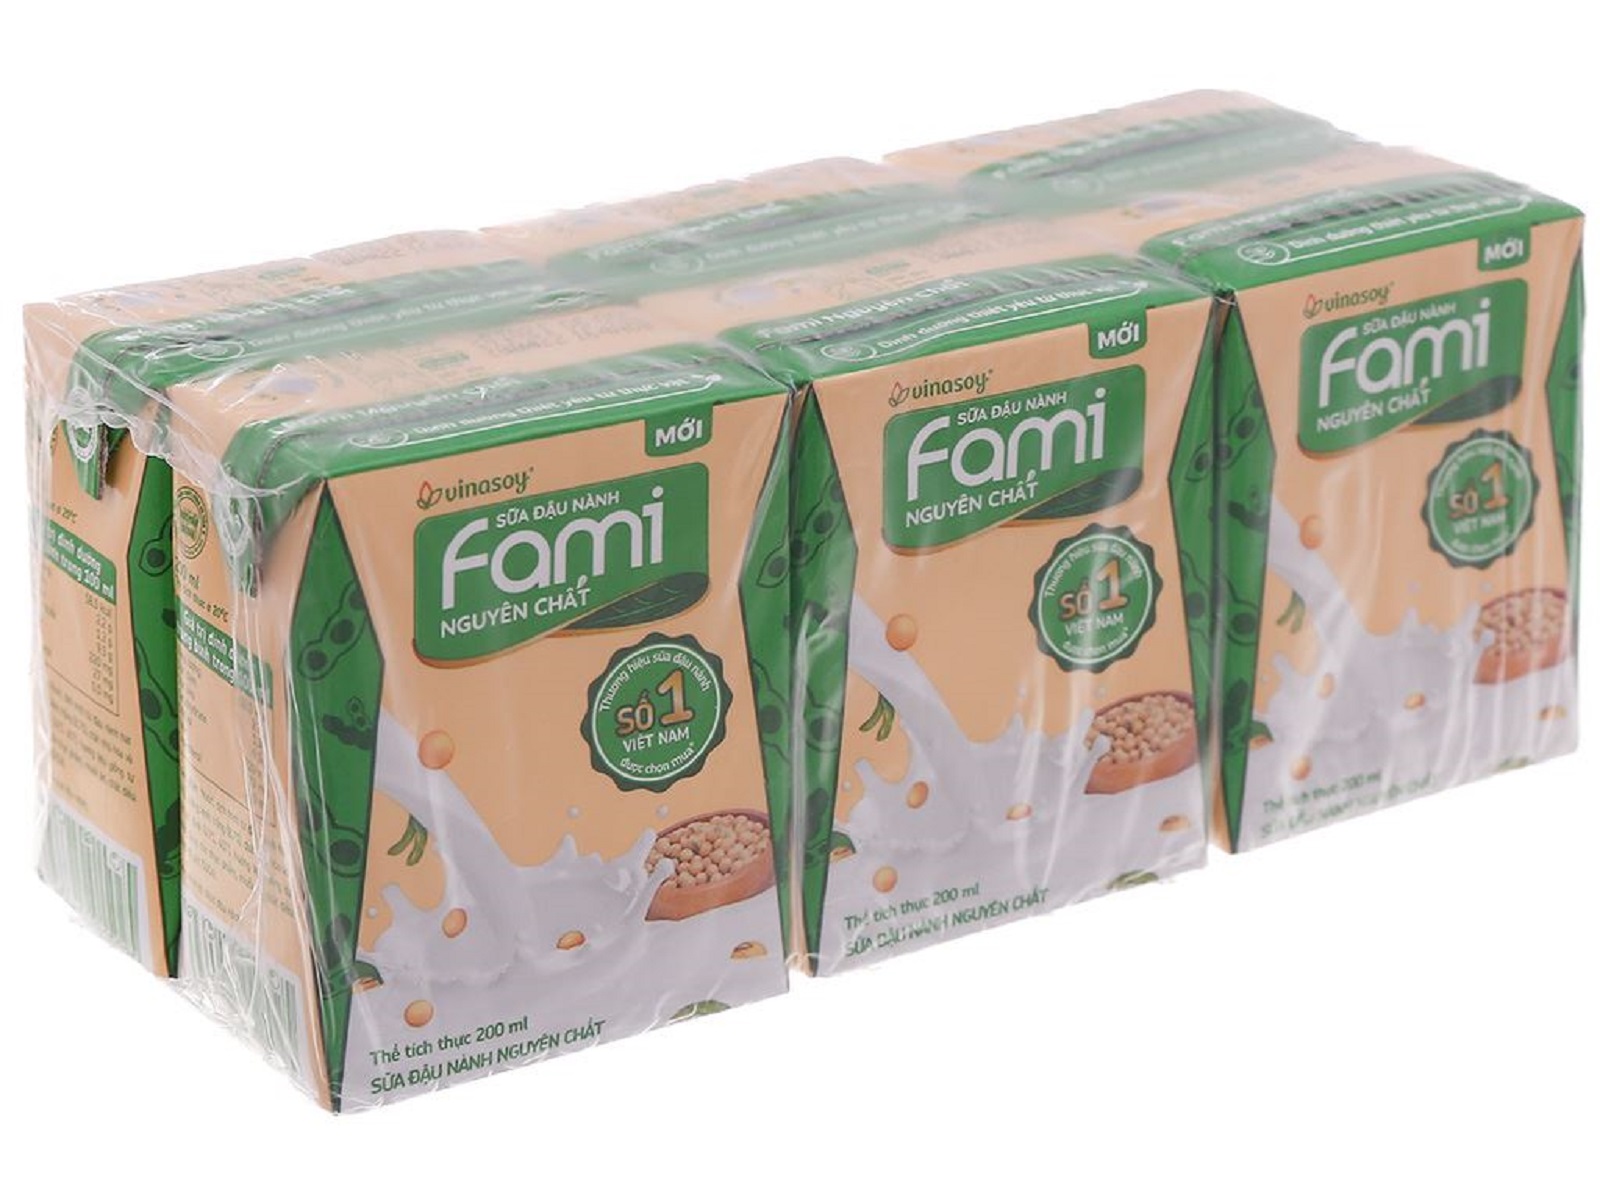 Bệnh tiểu đường uống sữa Fami được không?